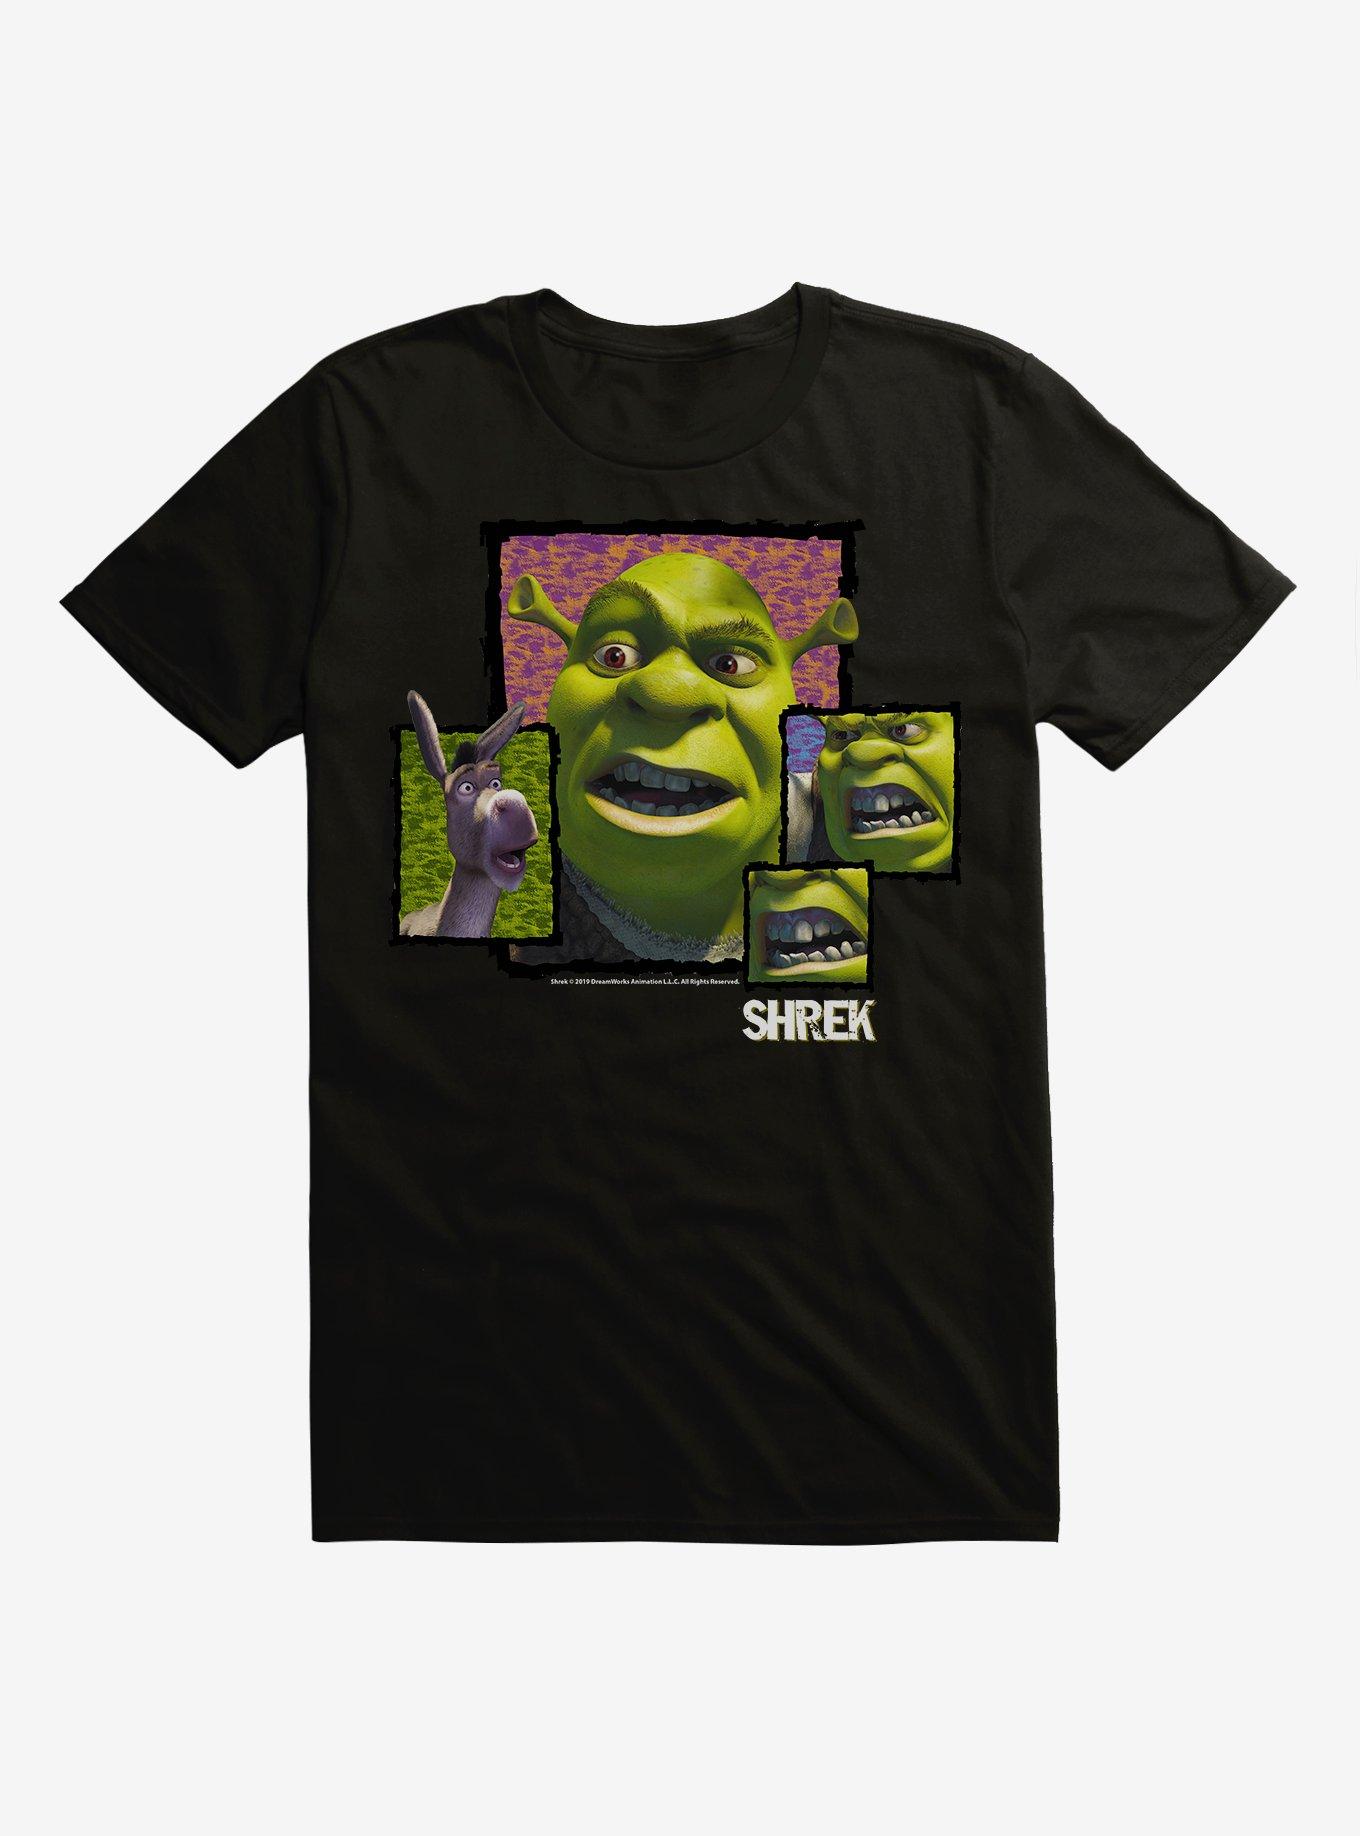 Shrek Donkey Close Up T-Shirt